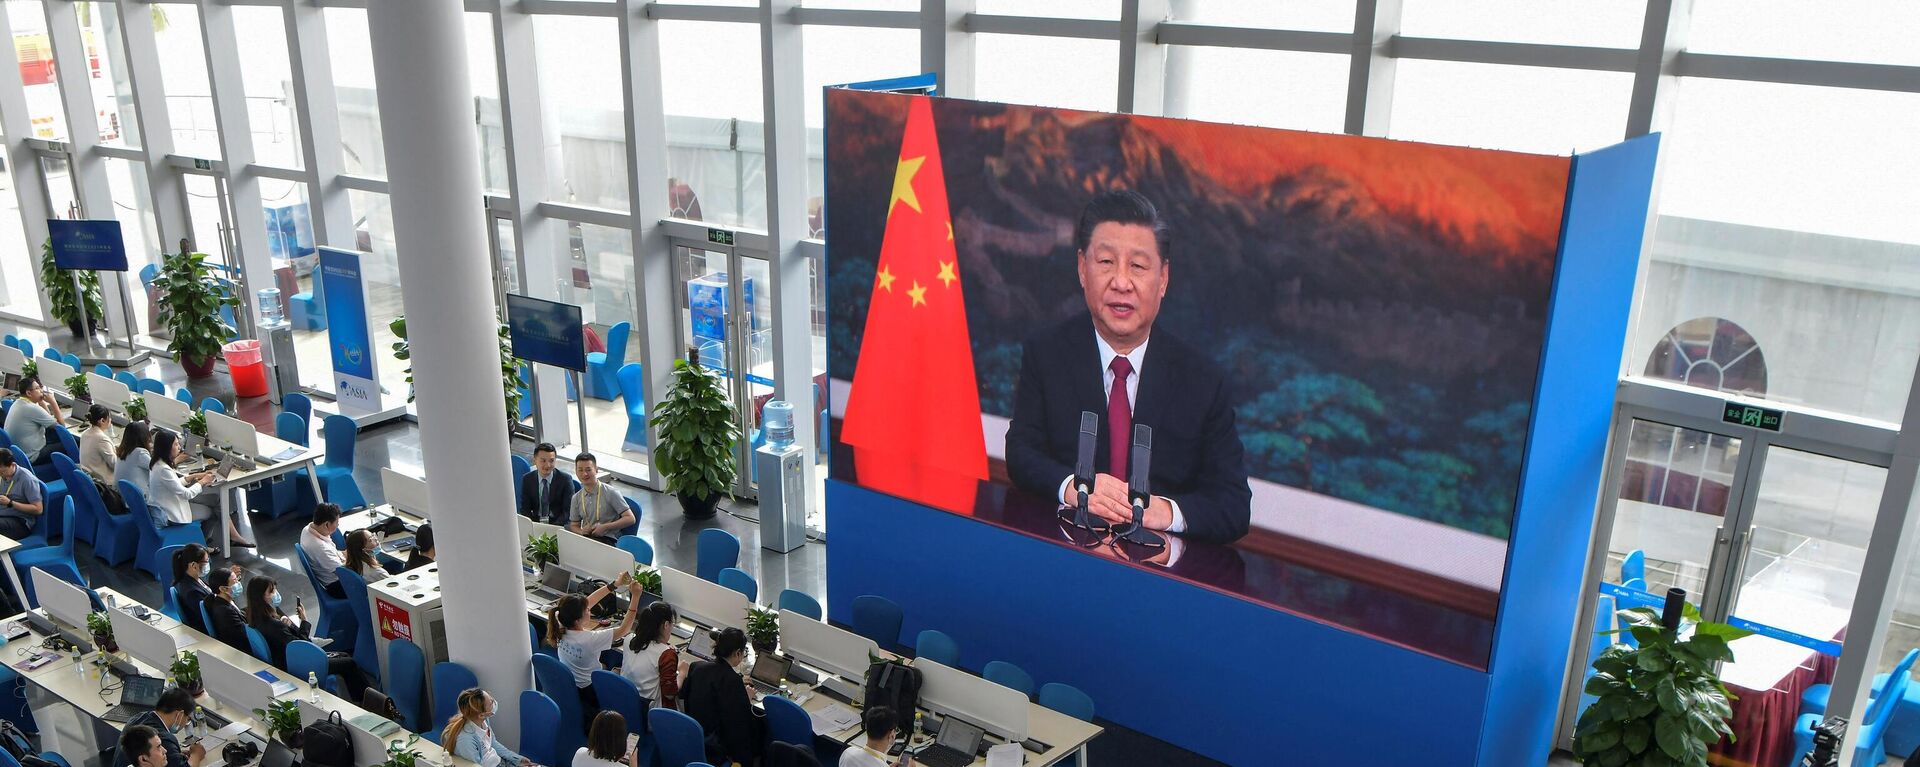 Журналисты смотрят экран, на котором президент Китая Си Цзиньпин выступает с речью на открытии Ежегодной конференции Боаоского азиатского форума (BFA) 2021 - Sputnik Таджикистан, 1920, 22.04.2021